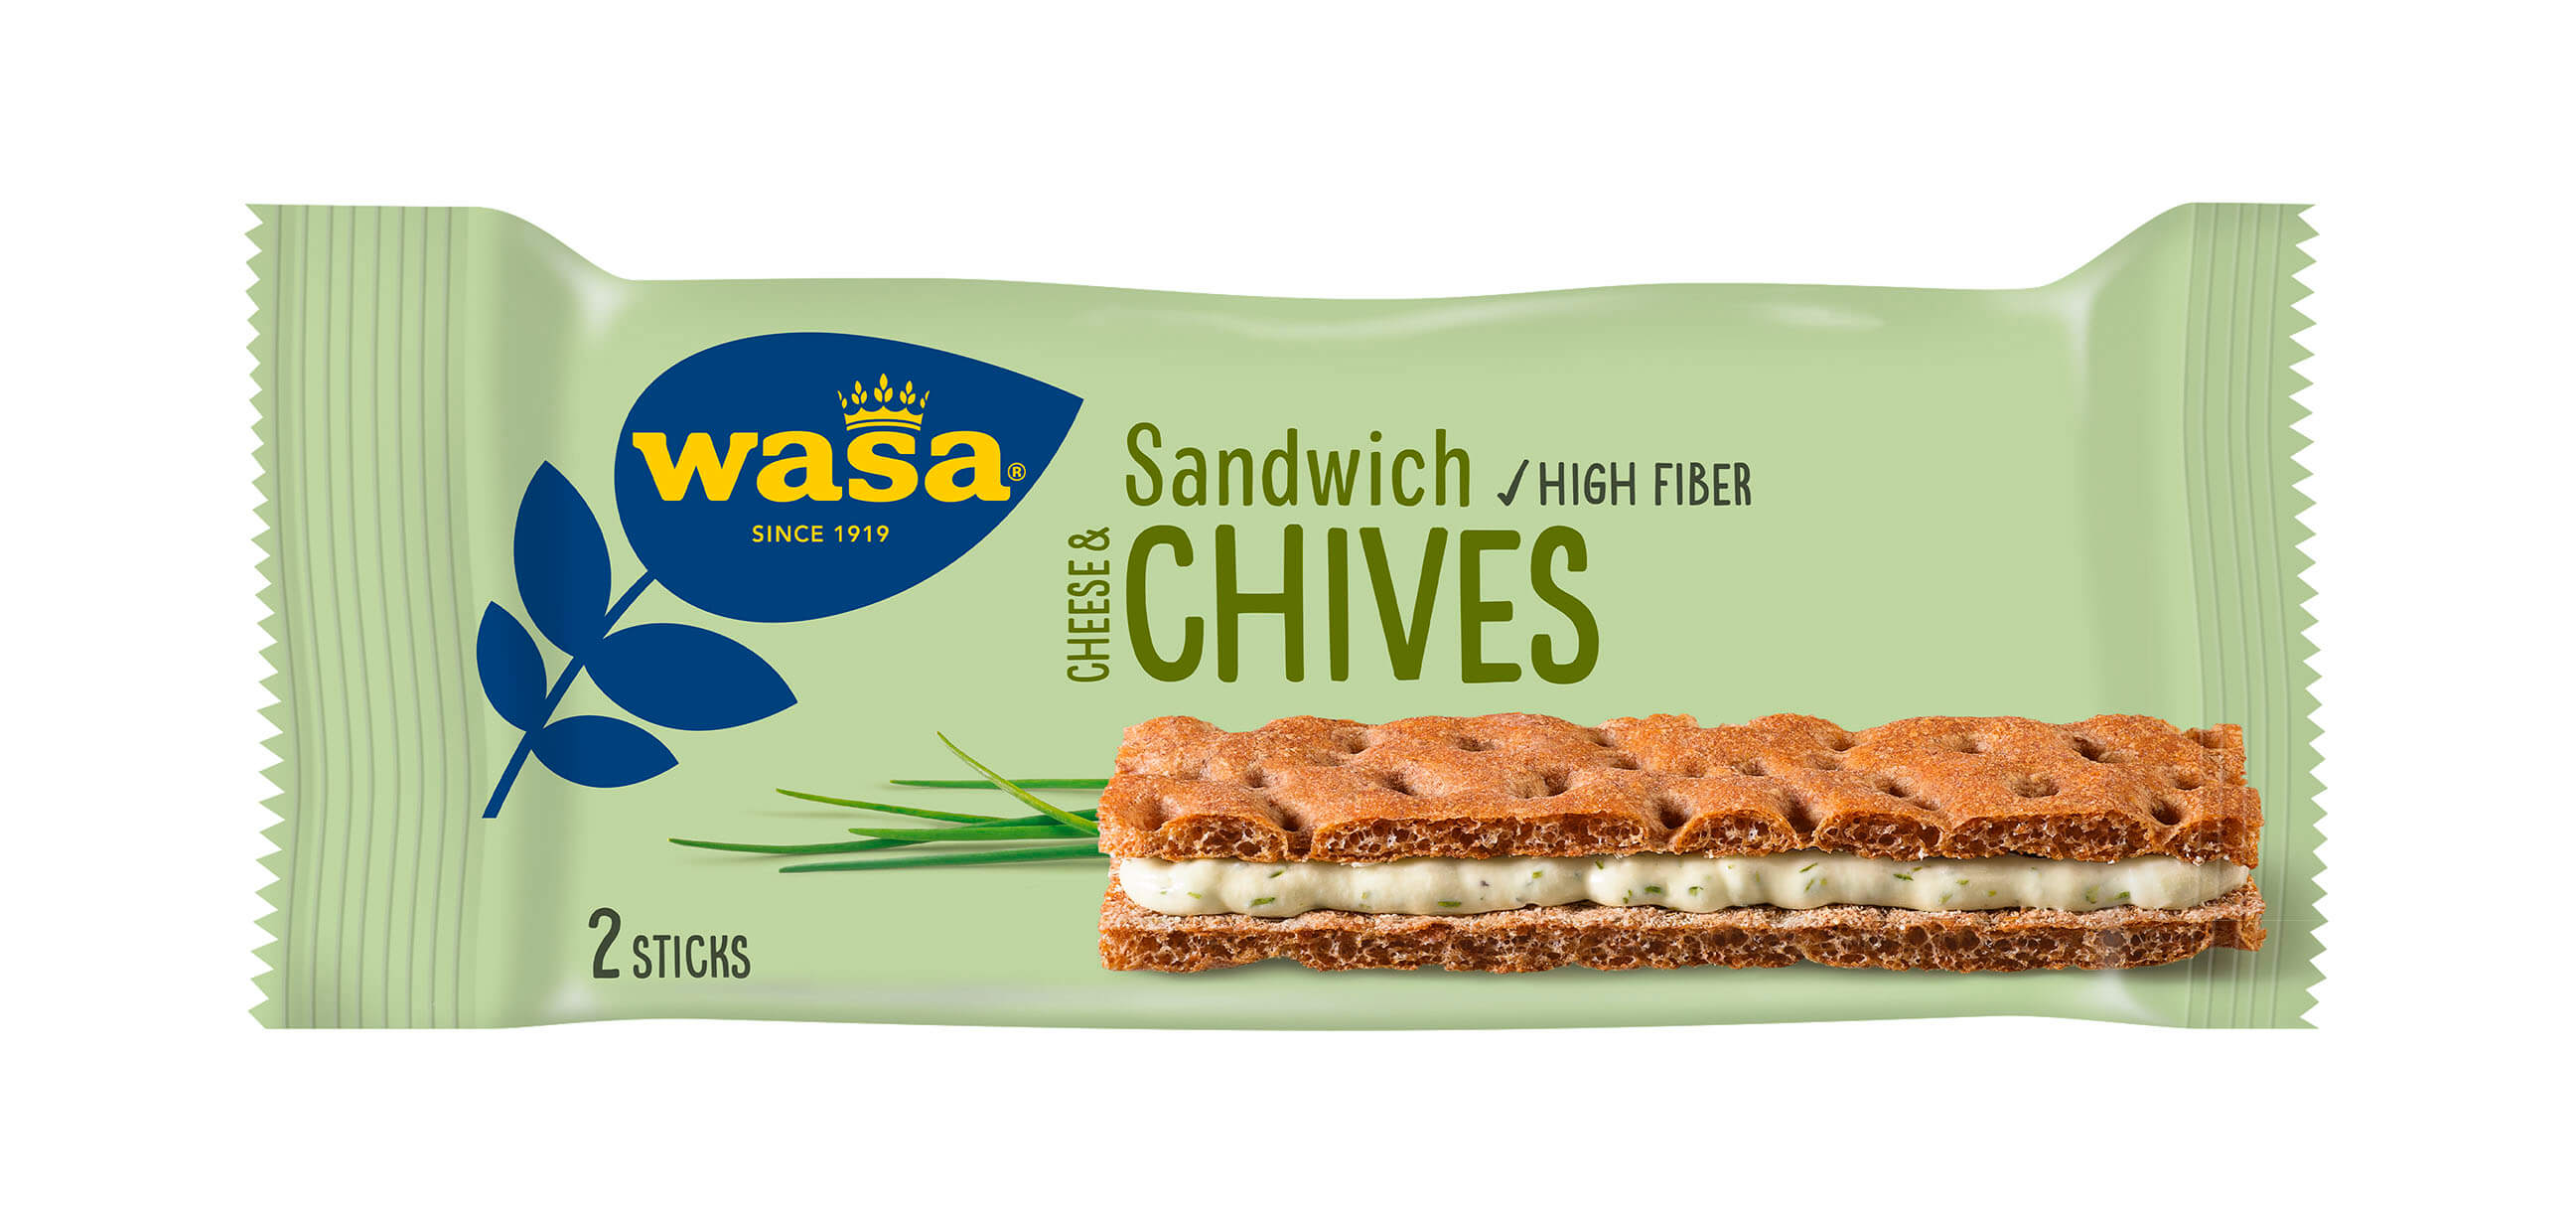 Wasa Sandwich Cheese & Chives - Upptäck det perfekta mellanmålet, knäckebröd med krämig ostfyllning. Utmärkt som enkelt mellanmål när du är på språng och som tips på mellanmål till jobbet, efter skolan eller innan träning.